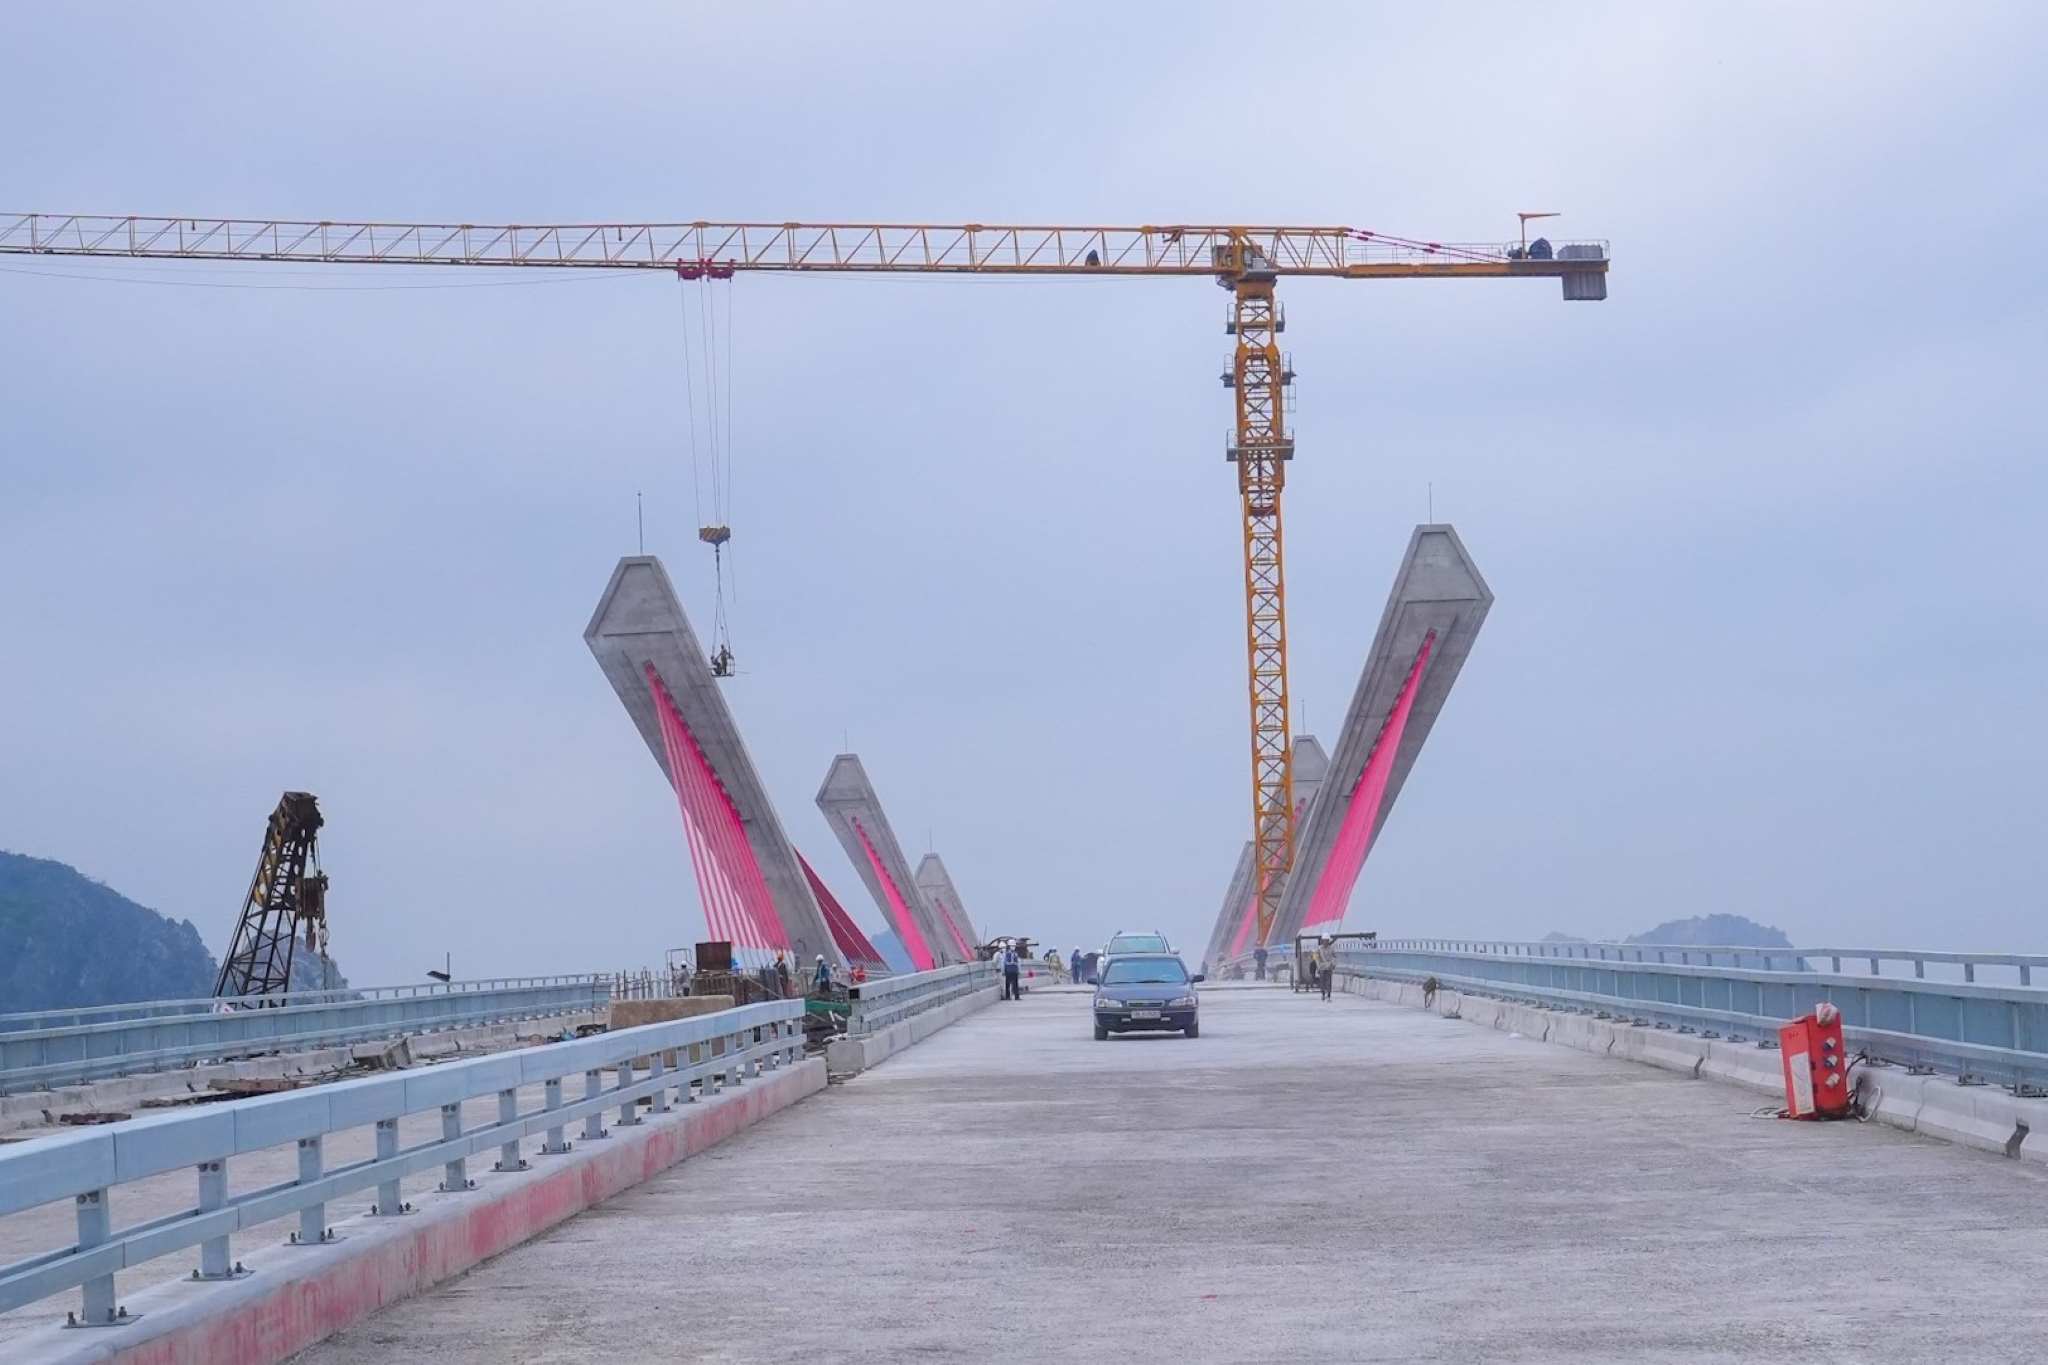 Dự án đầu tư xây dựng cầu Bến Rừng khởi công ngày 13.5.2022, thời gian thực hiện hợp đồng 24 tháng. Cầu có kết cấu vĩnh cửu vượt sông Đá Bạch với chiều dài cầu 1.865,3m. Ảnh: Đàm Thanh